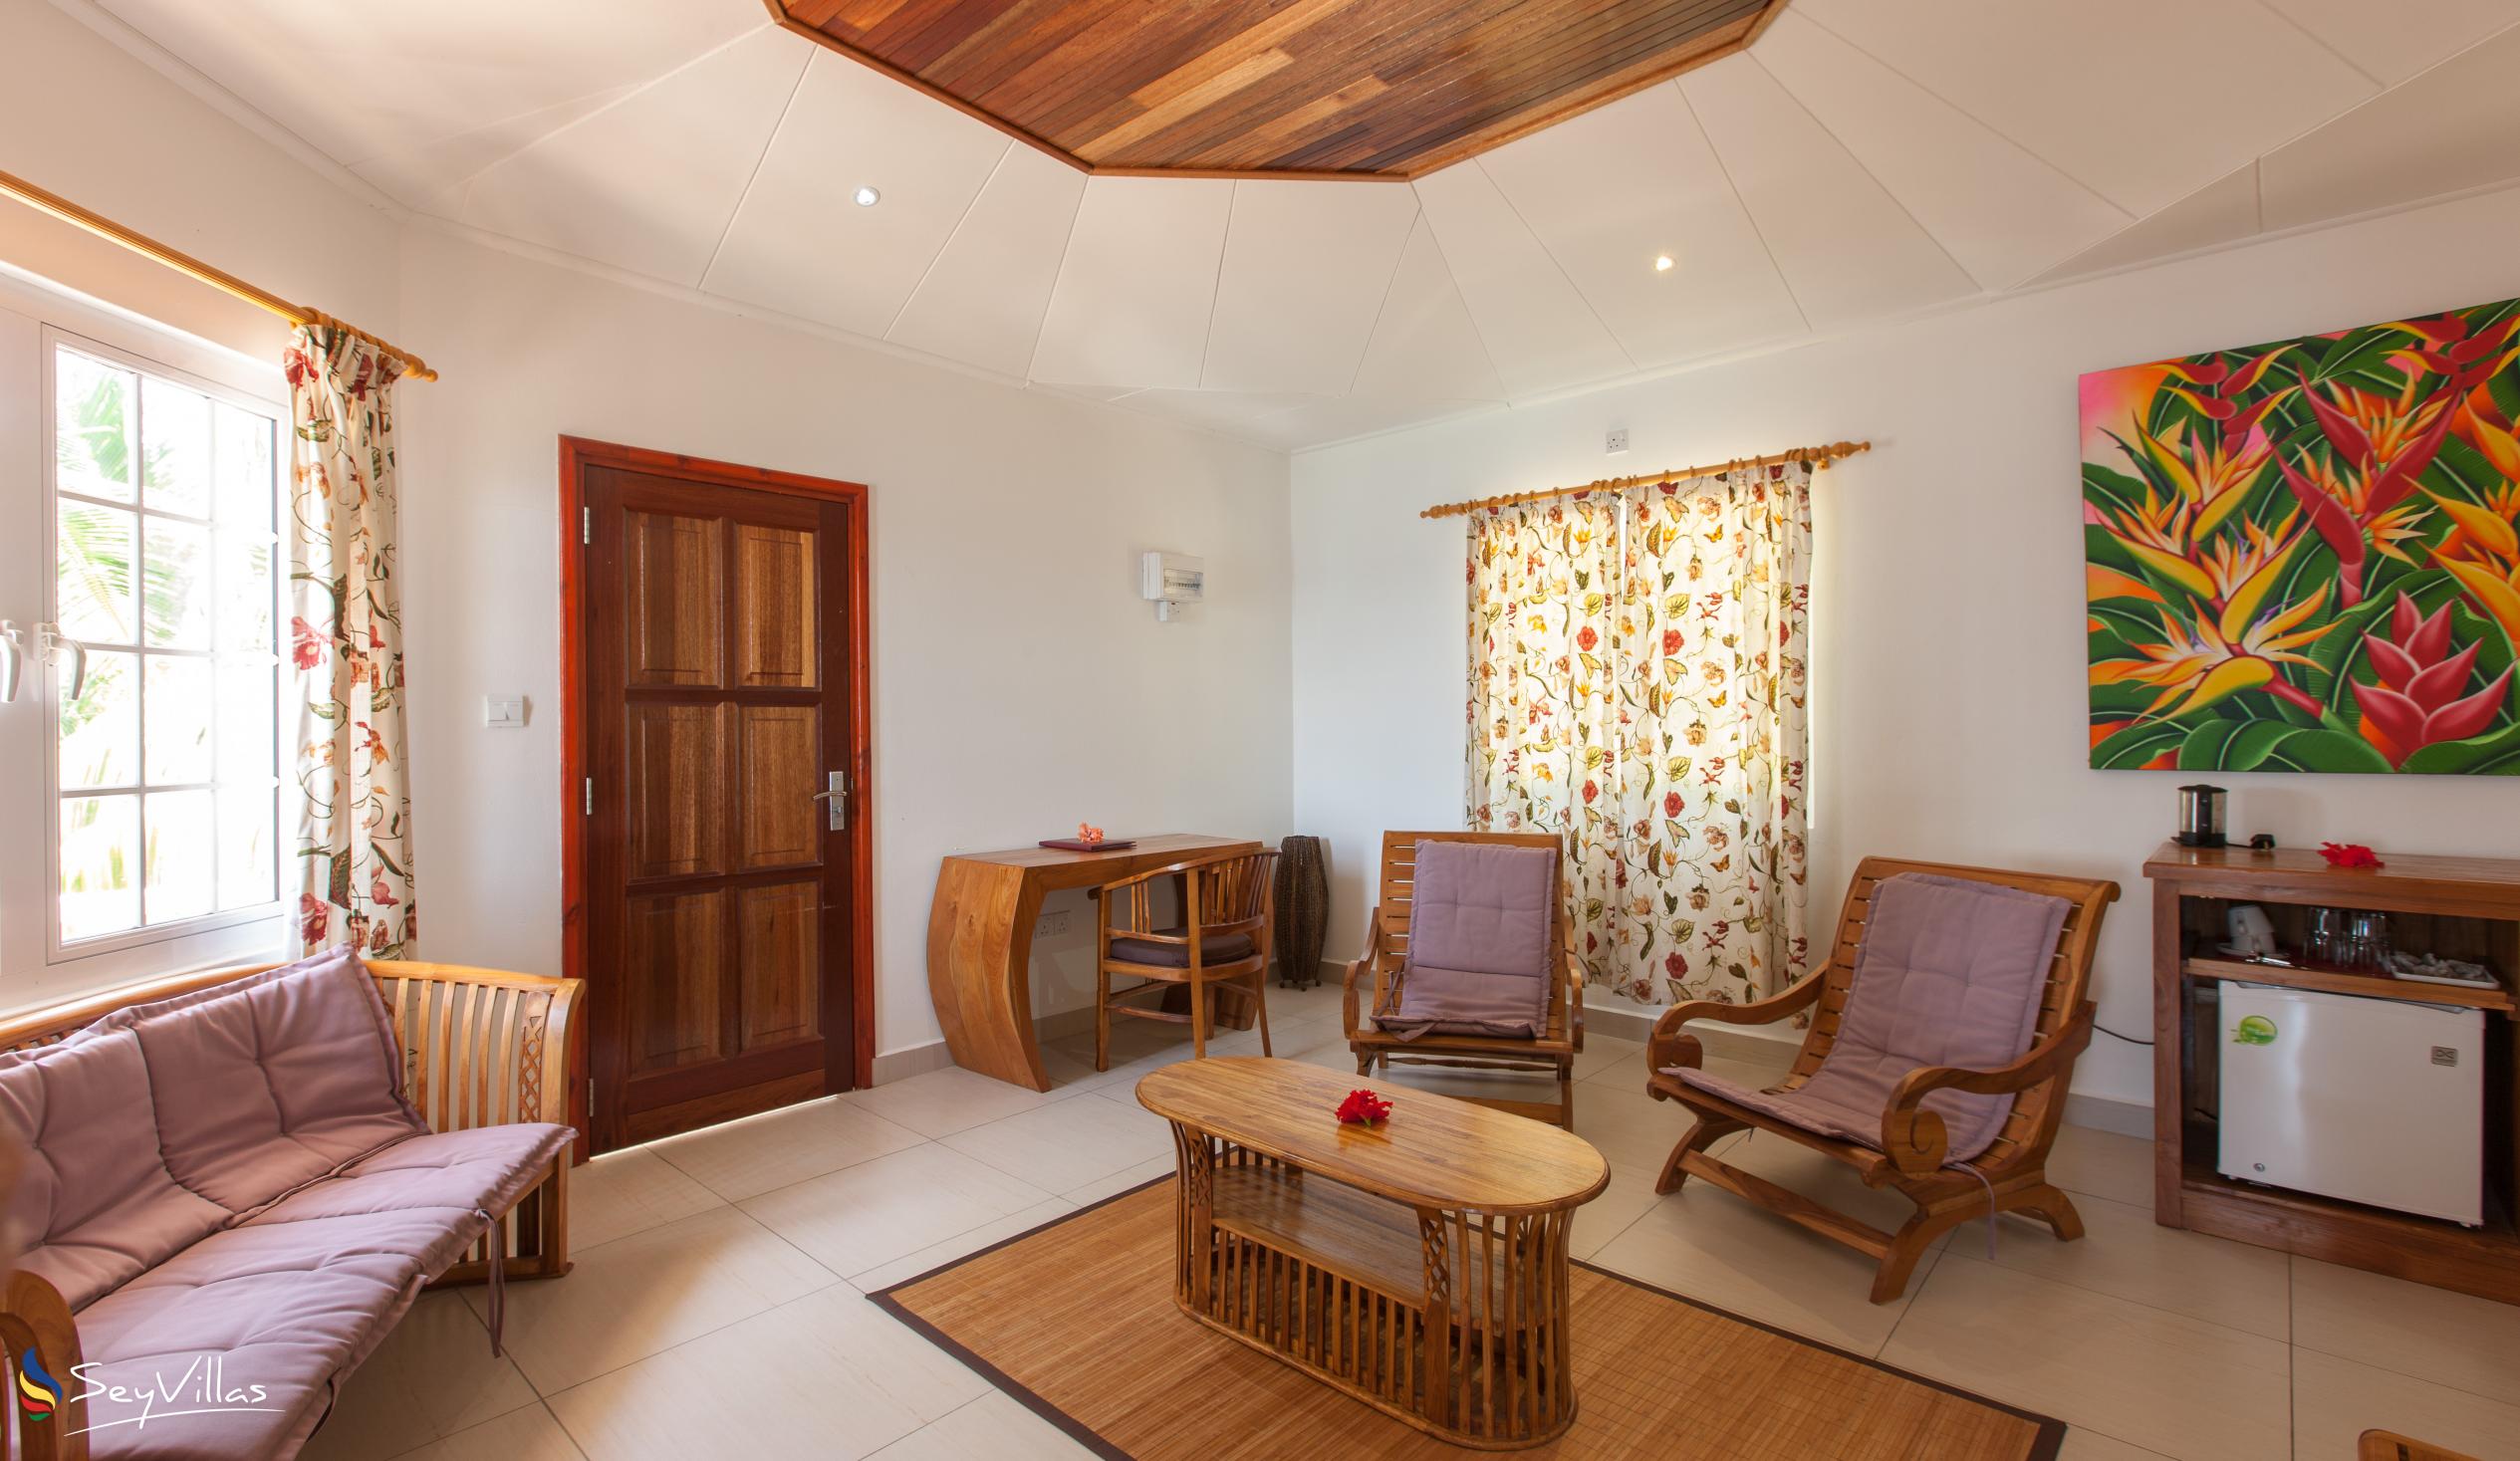 Photo 46: Patatran Village Hotel - Honeymoon Suite - La Digue (Seychelles)